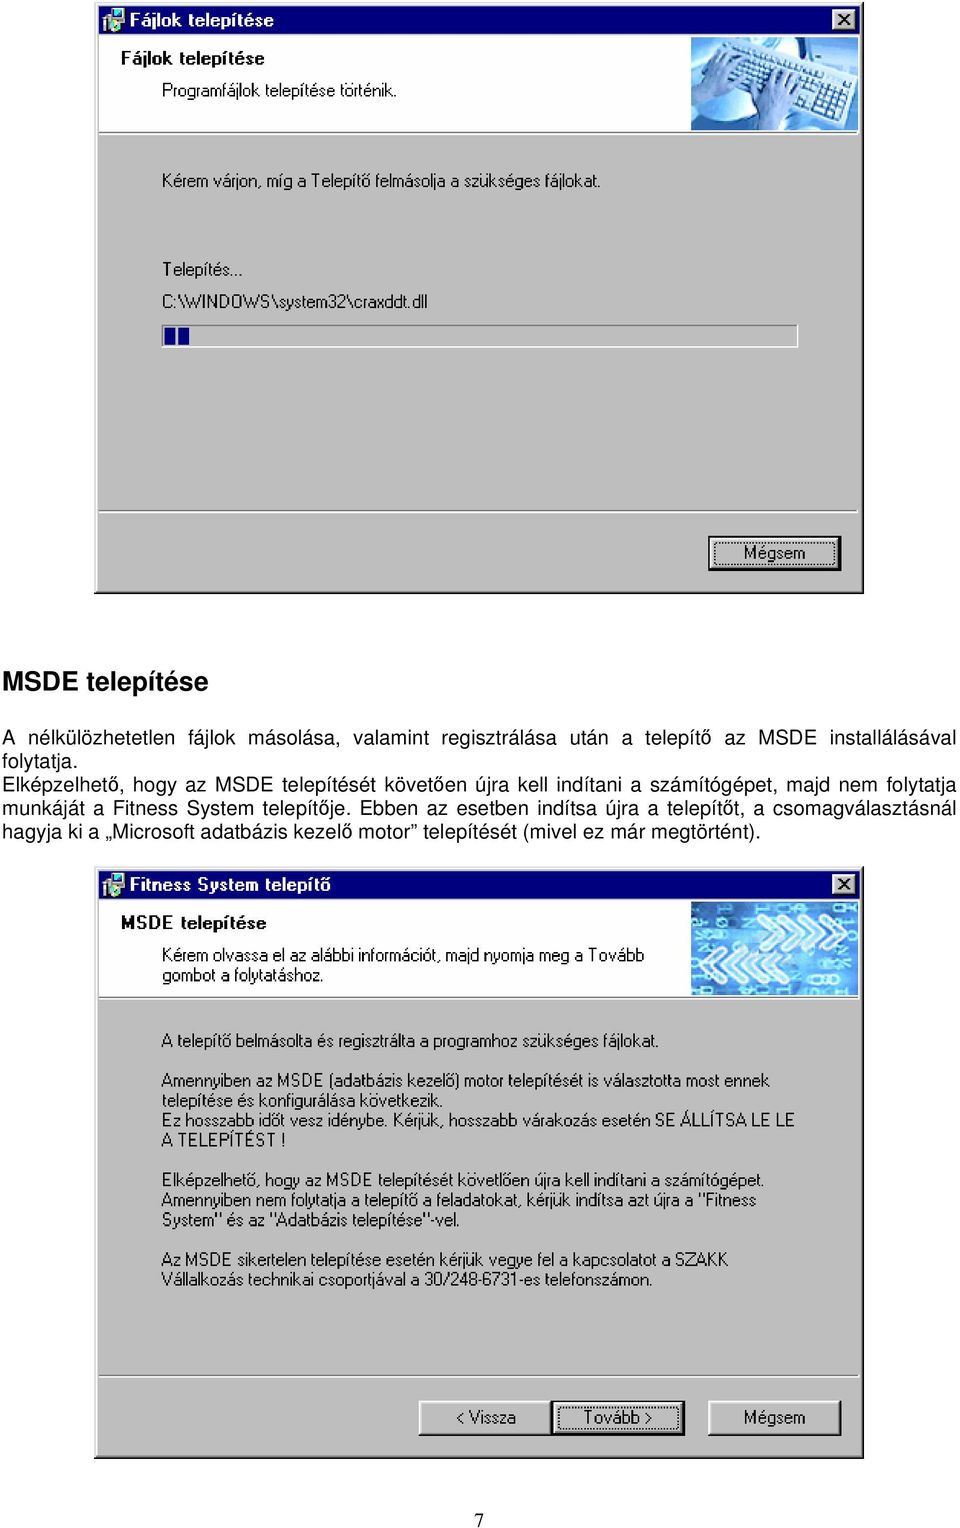 Elképzelhető, hogy az MSDE telepítését követően újra kell indítani a számítógépet, majd nem folytatja